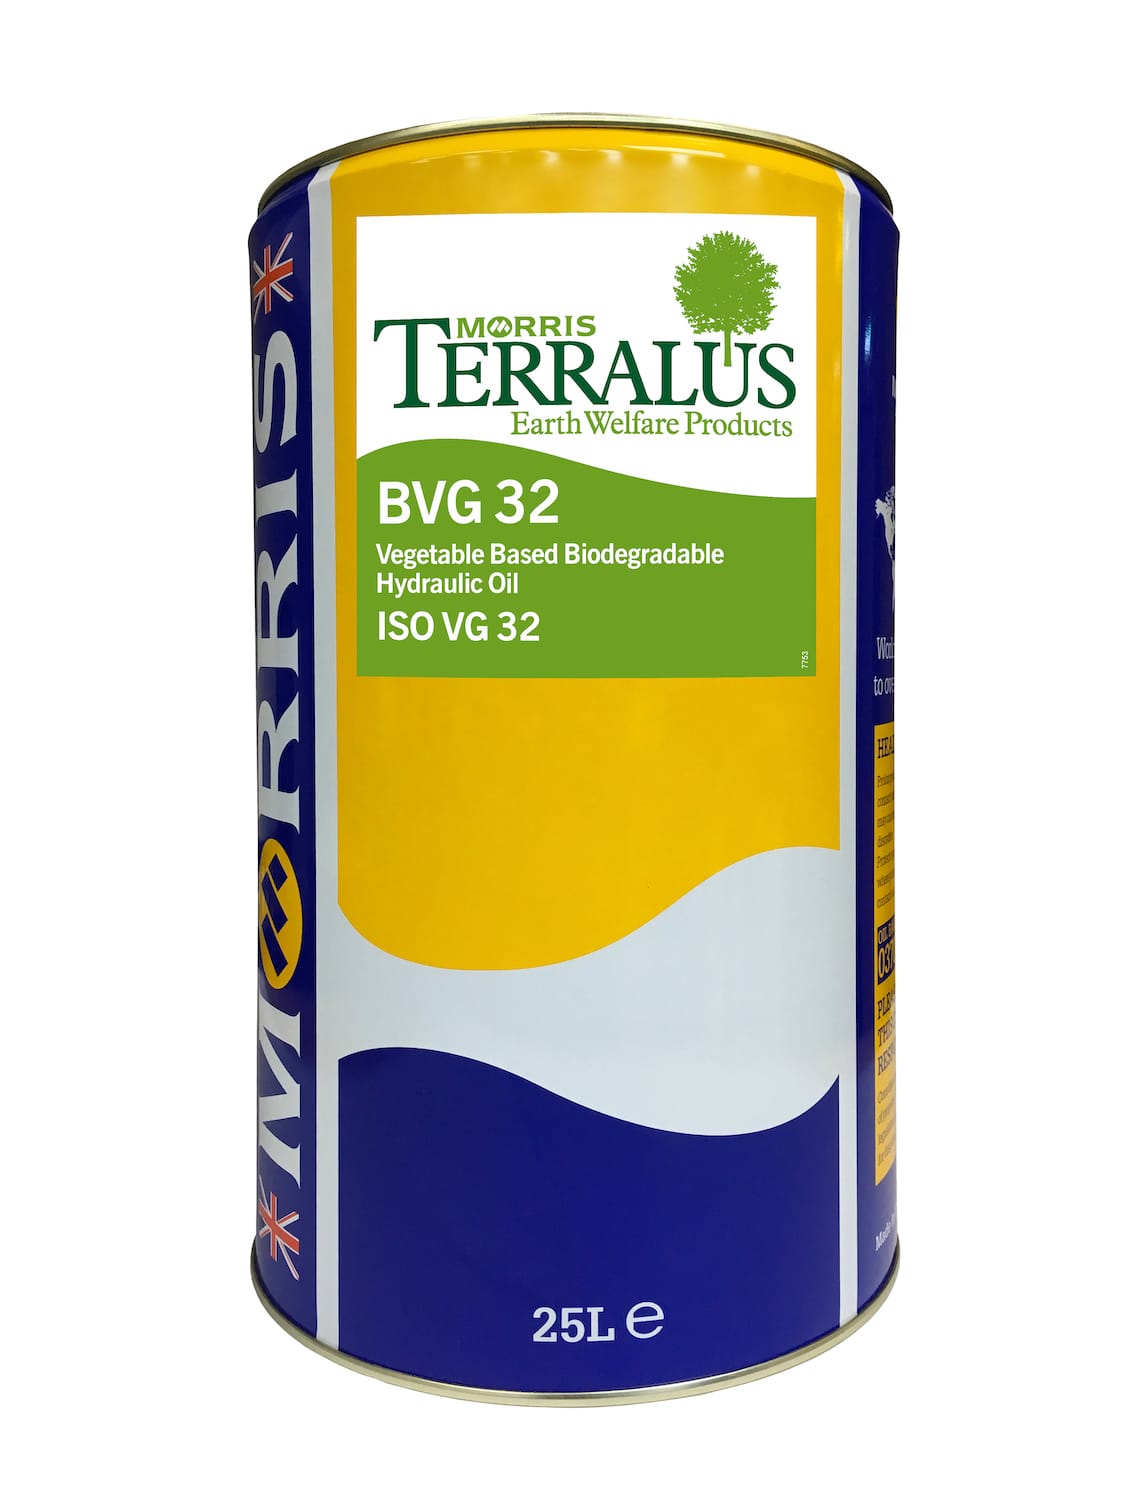 Terralus BVG 32